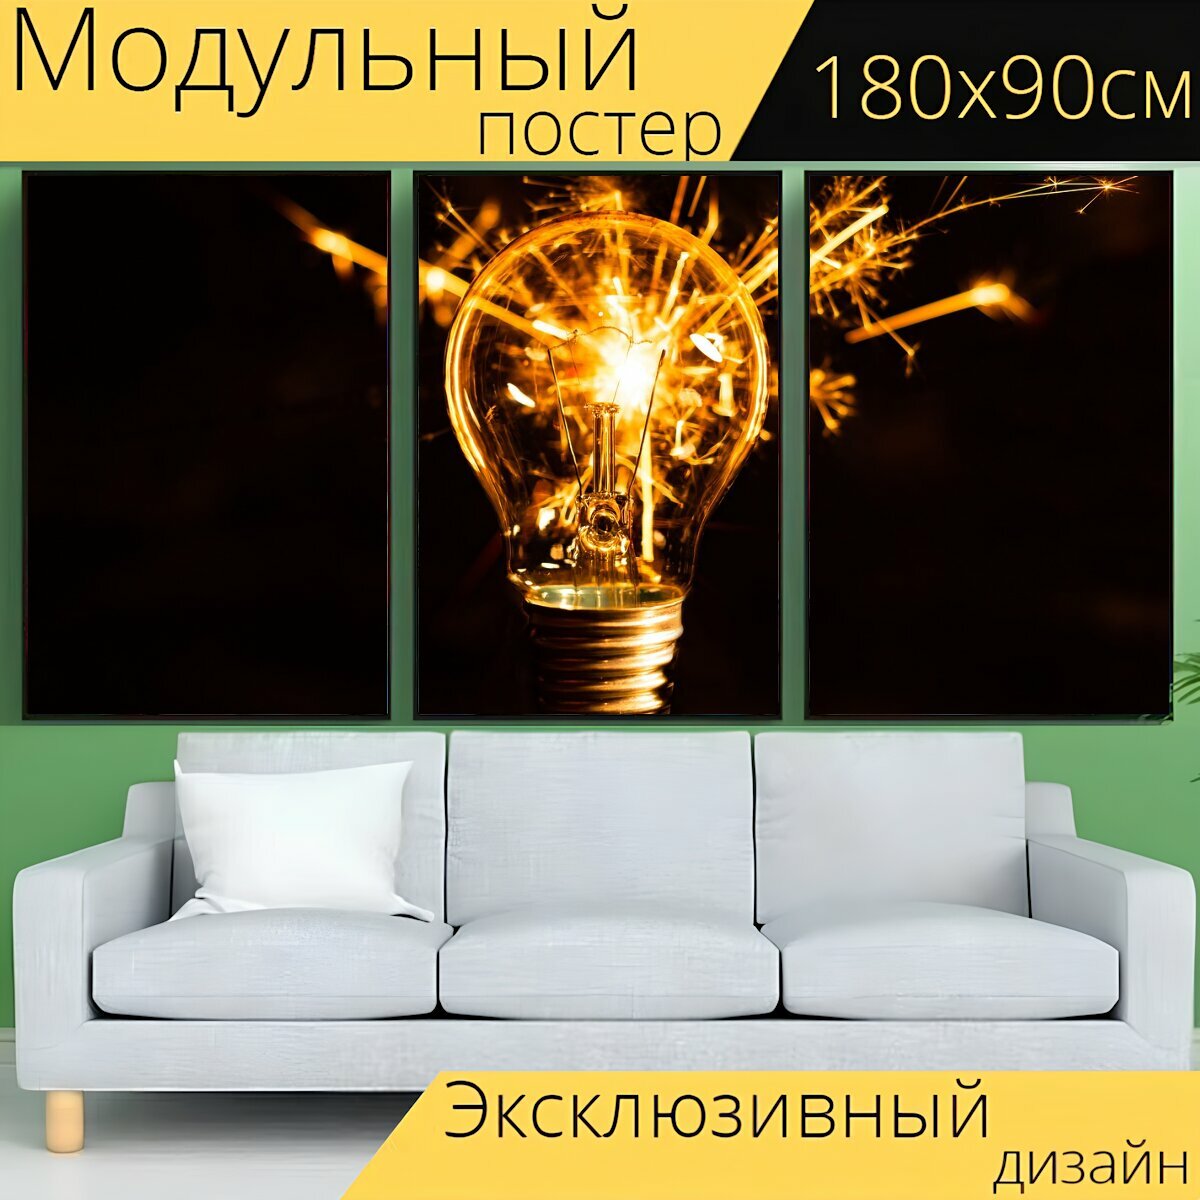 Модульный постер "Лампочка, напольная лампа, свет" 180 x 90 см. для интерьера